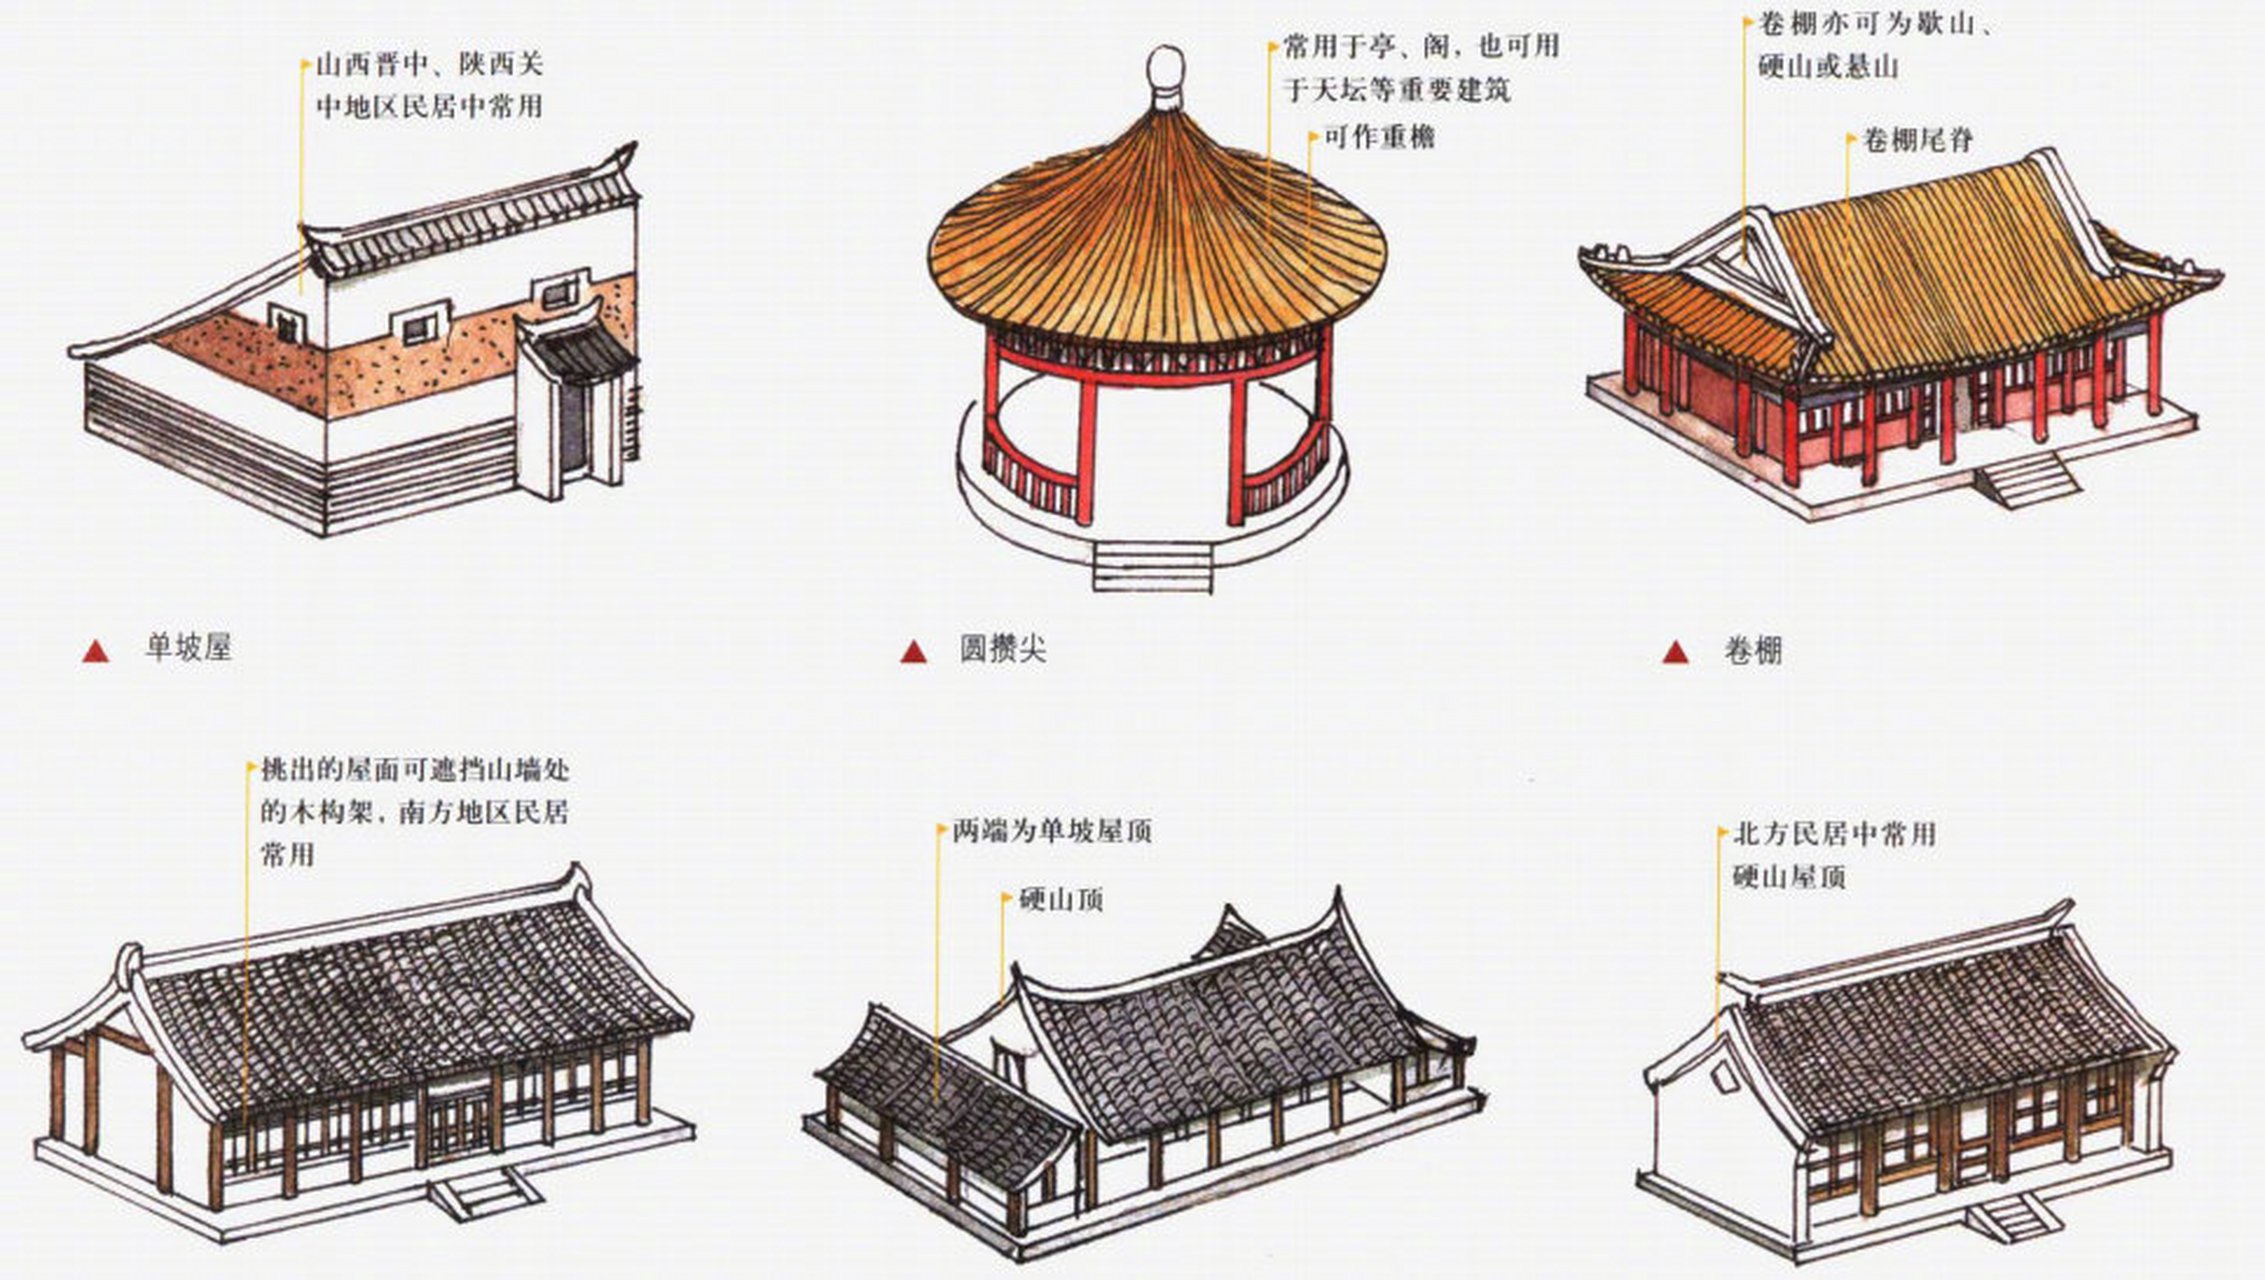 中国古代屋顶形式大全,学习下[赞同#文化#传统文化